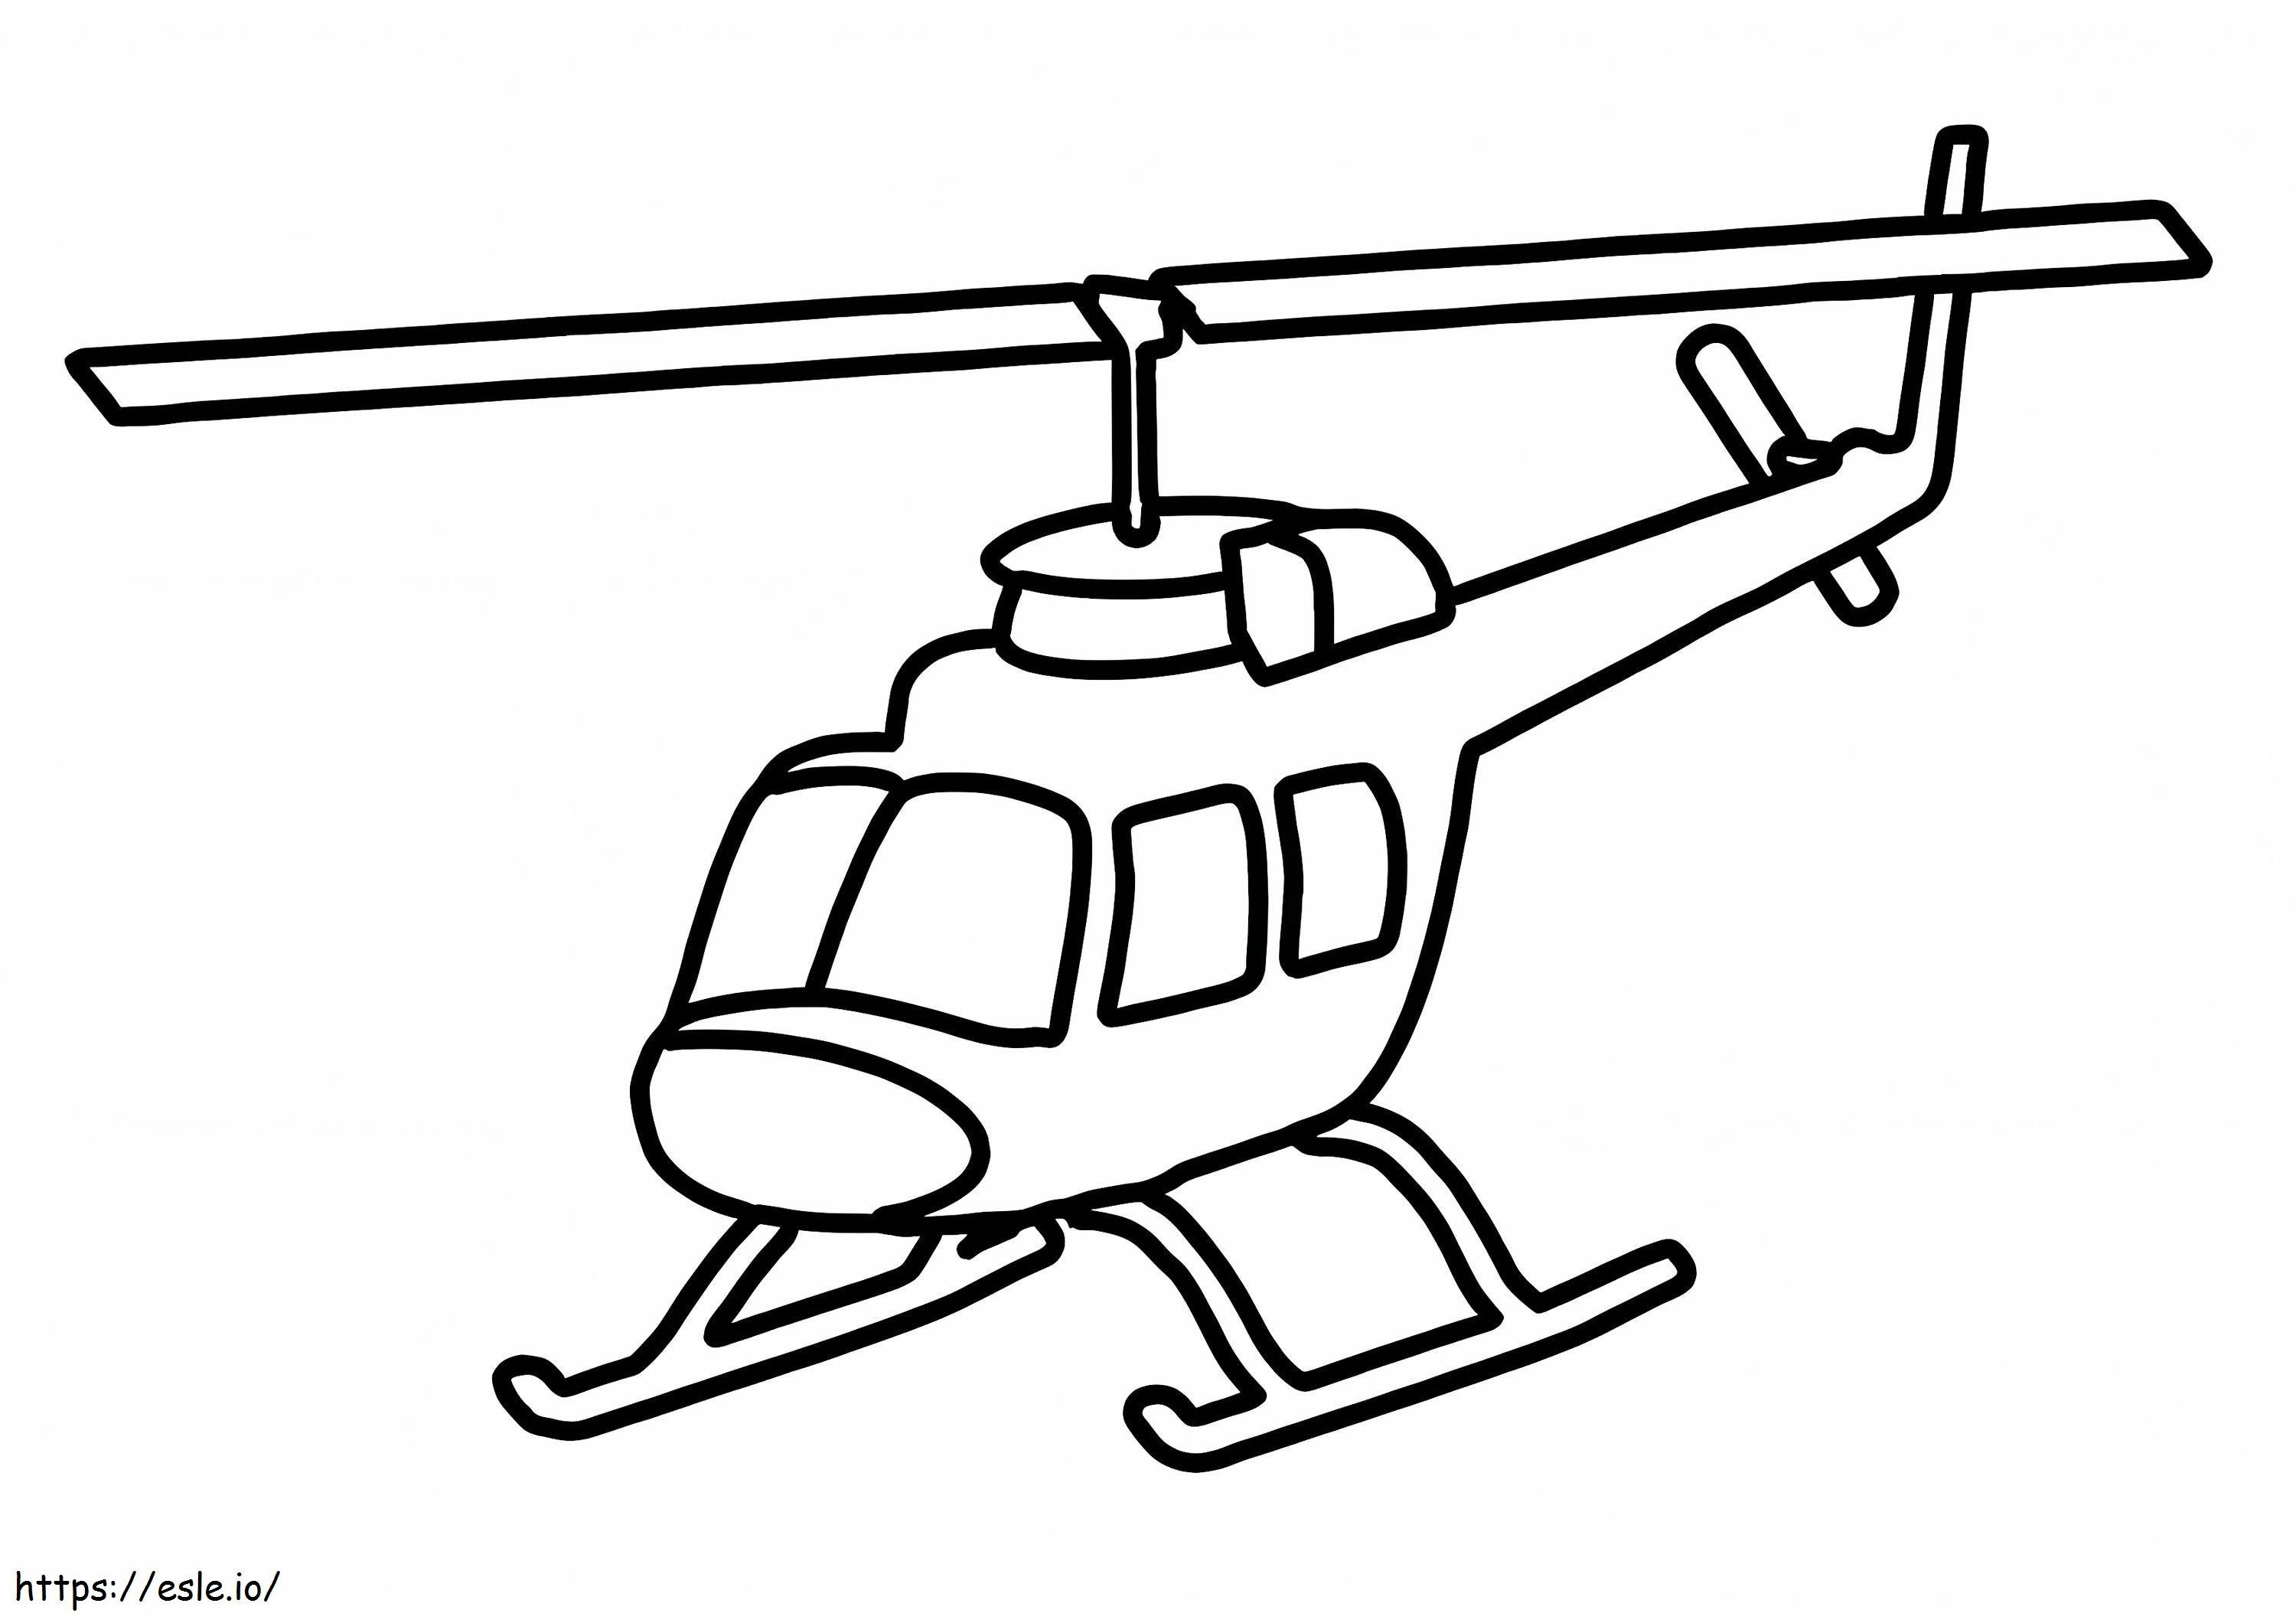 Helicóptero Incrível para colorir